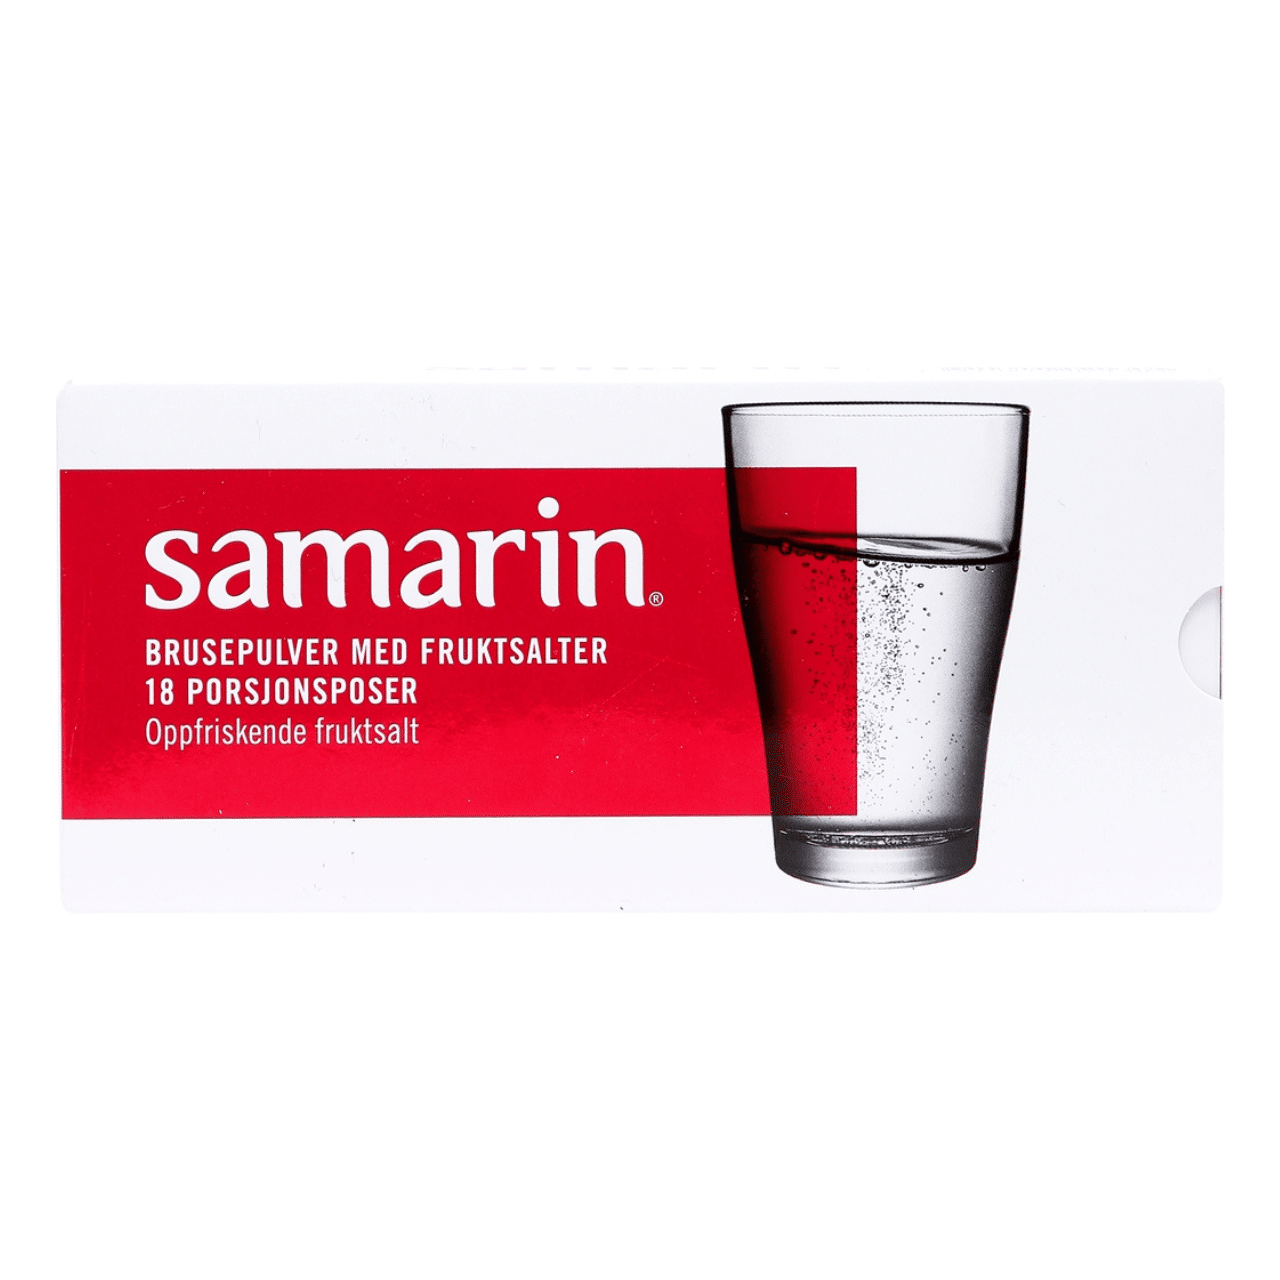 Samarin hỗ trợ tiêu hóa giảm ợ nóng và trào ngược axit